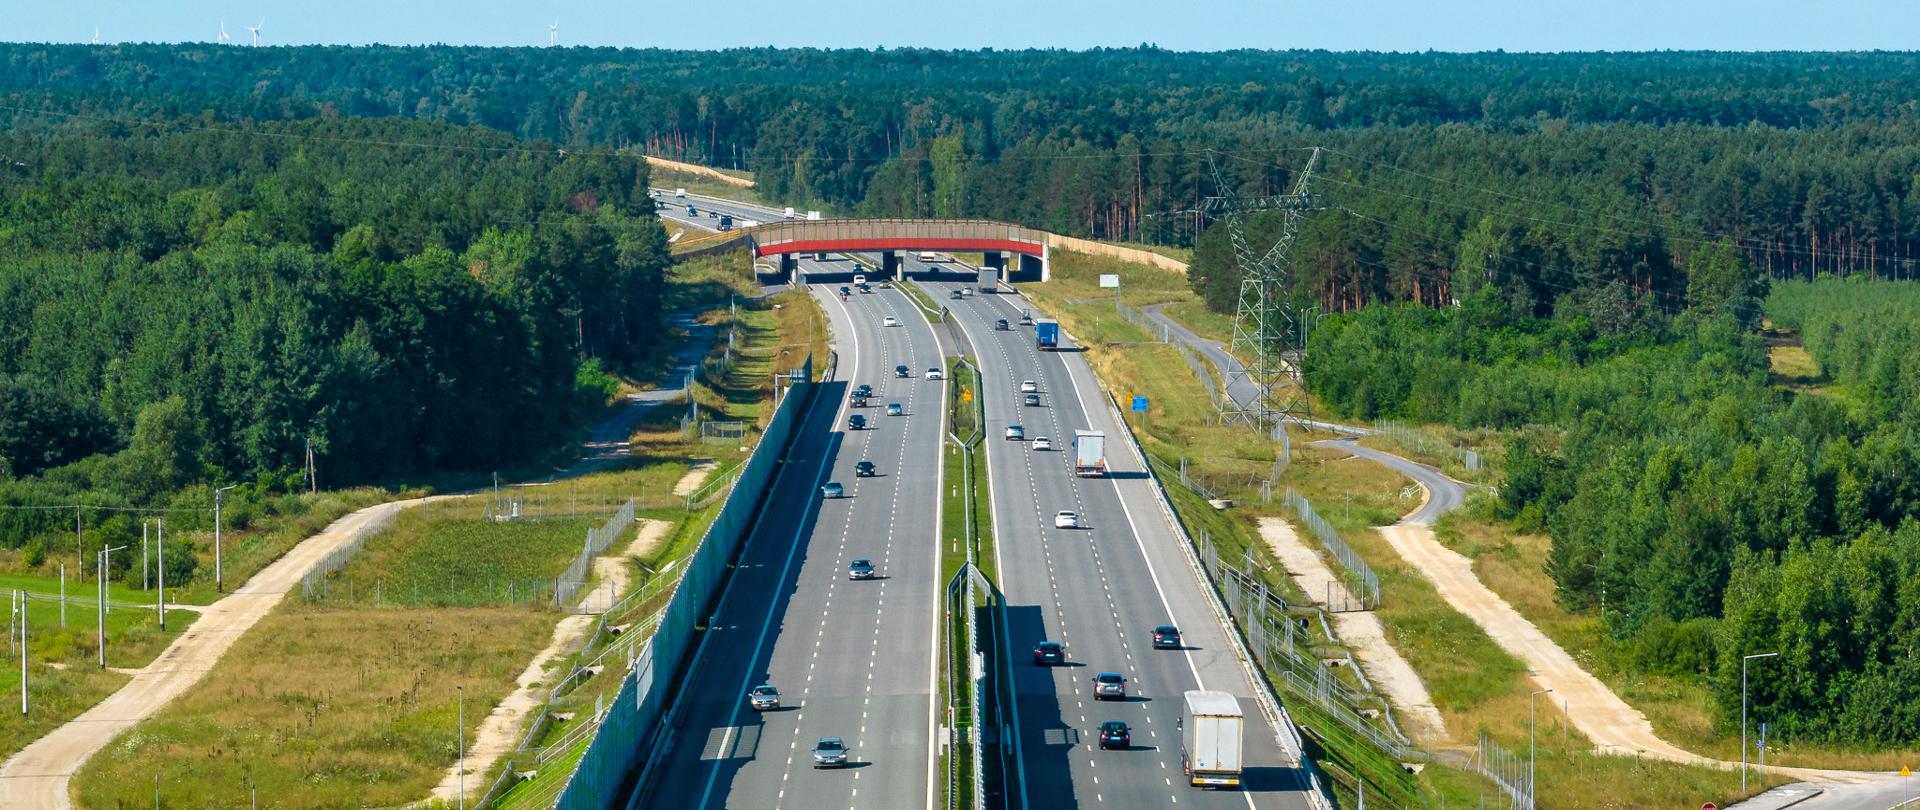 Ruch pojazdów na autostradzie A1 w okolicach Radomska. Trzy pasy ruchu w każdą stronę. Środkowej części zdjęcia nad autostradą znajduje się przejście dla zwierząt. Po obu stronach drogi rośnie gęsty las.